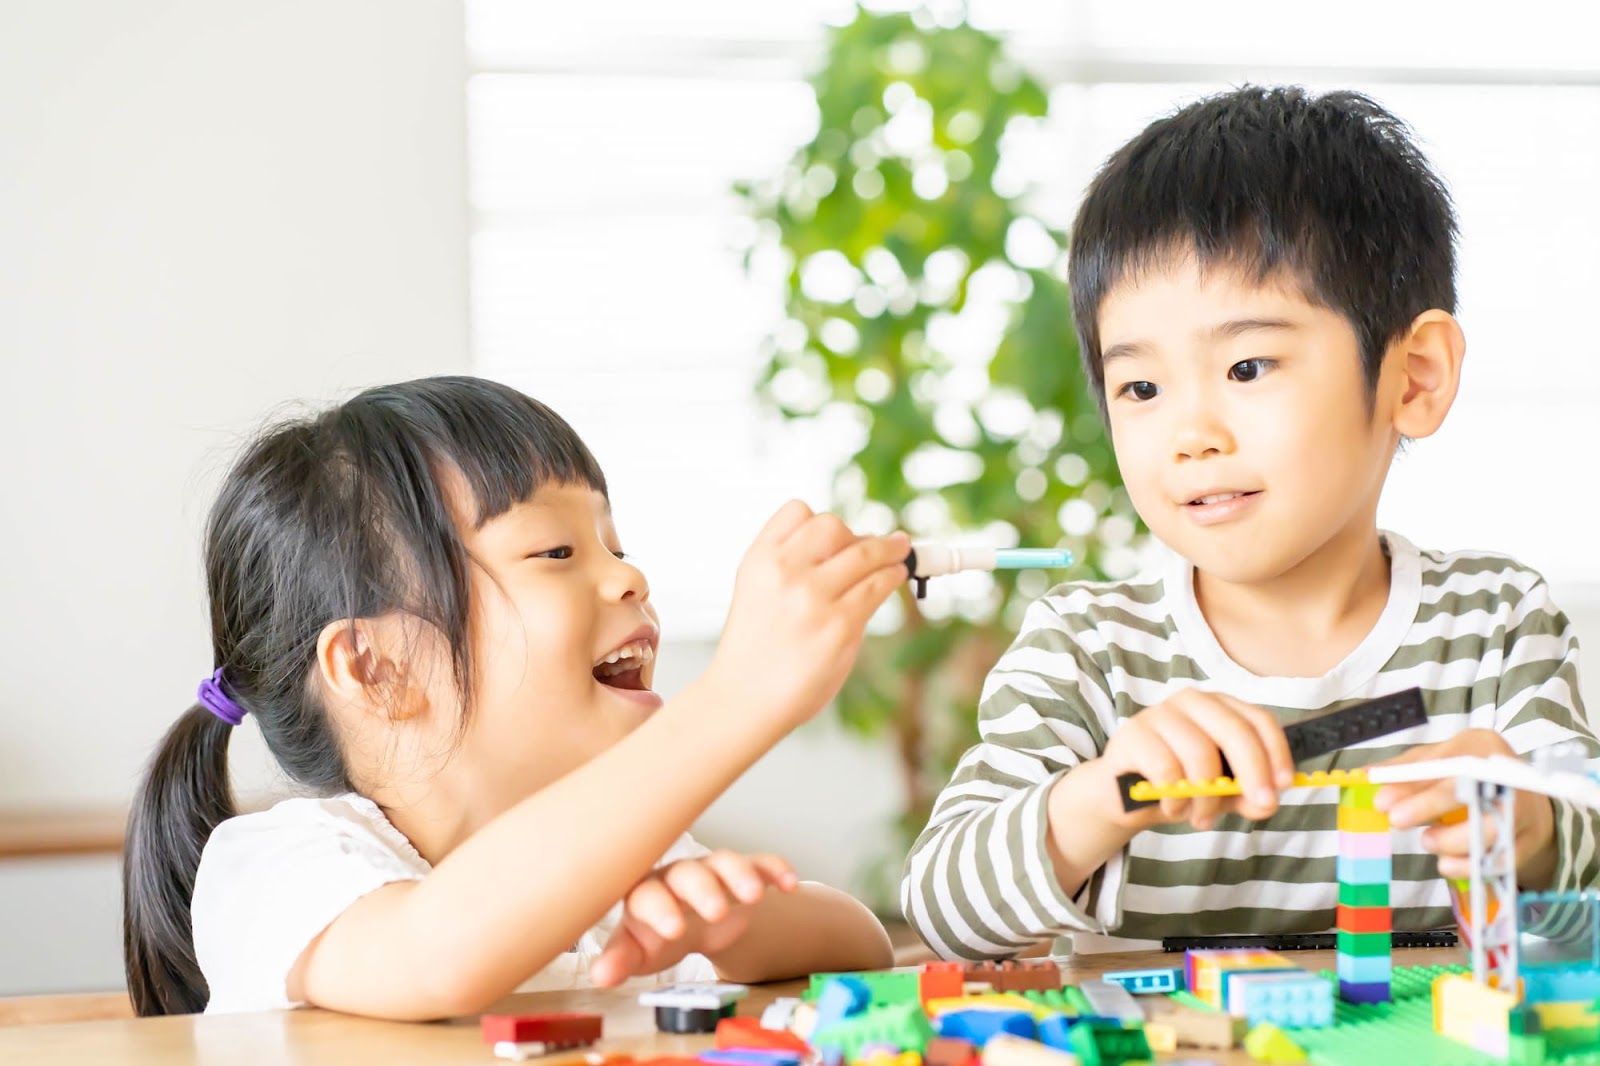 子どもの「考える力」を身につけるために家庭でできる遊びを3つ紹介